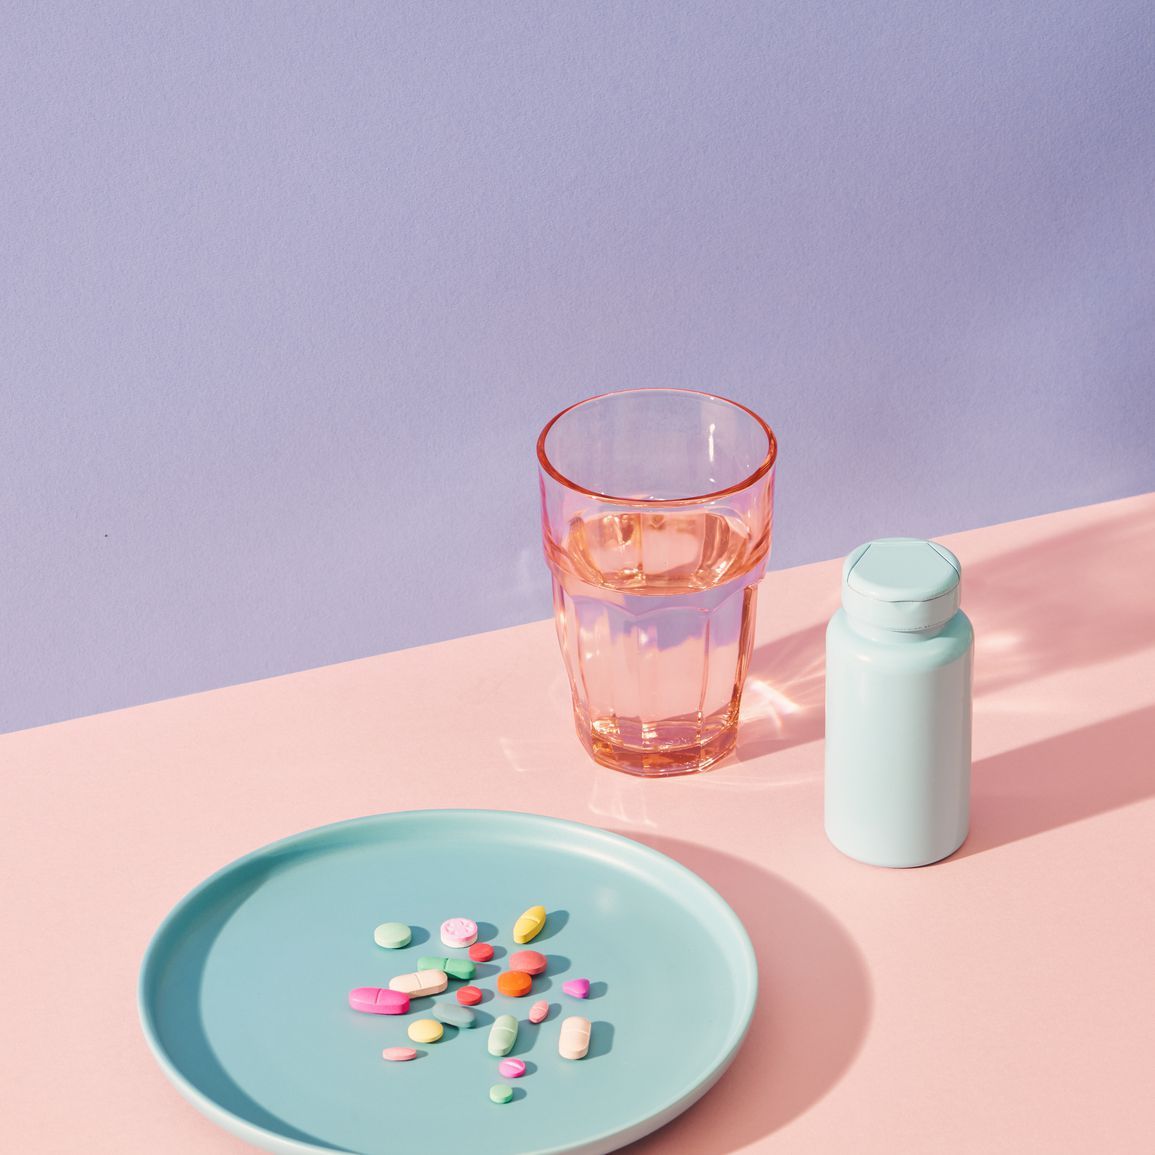 vitamintilskud på bordet med glas og pilleflaske